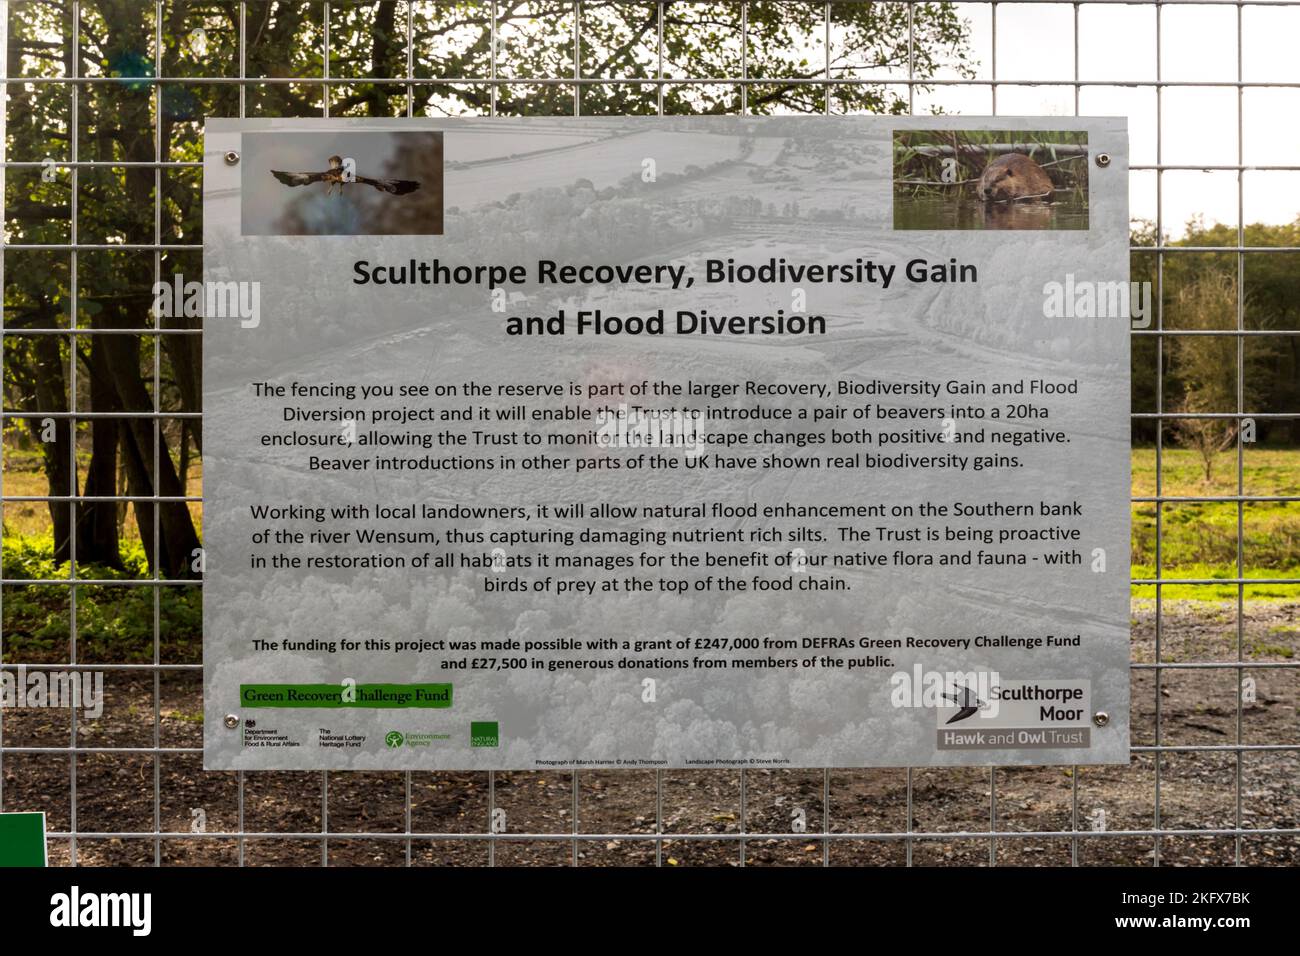 Un panneau à la réserve naturelle de Sculthorpe Moor explique l'introduction des castors dans le cadre du projet de rétablissement, de gain de biodiversité et de dérivation des crues. Banque D'Images